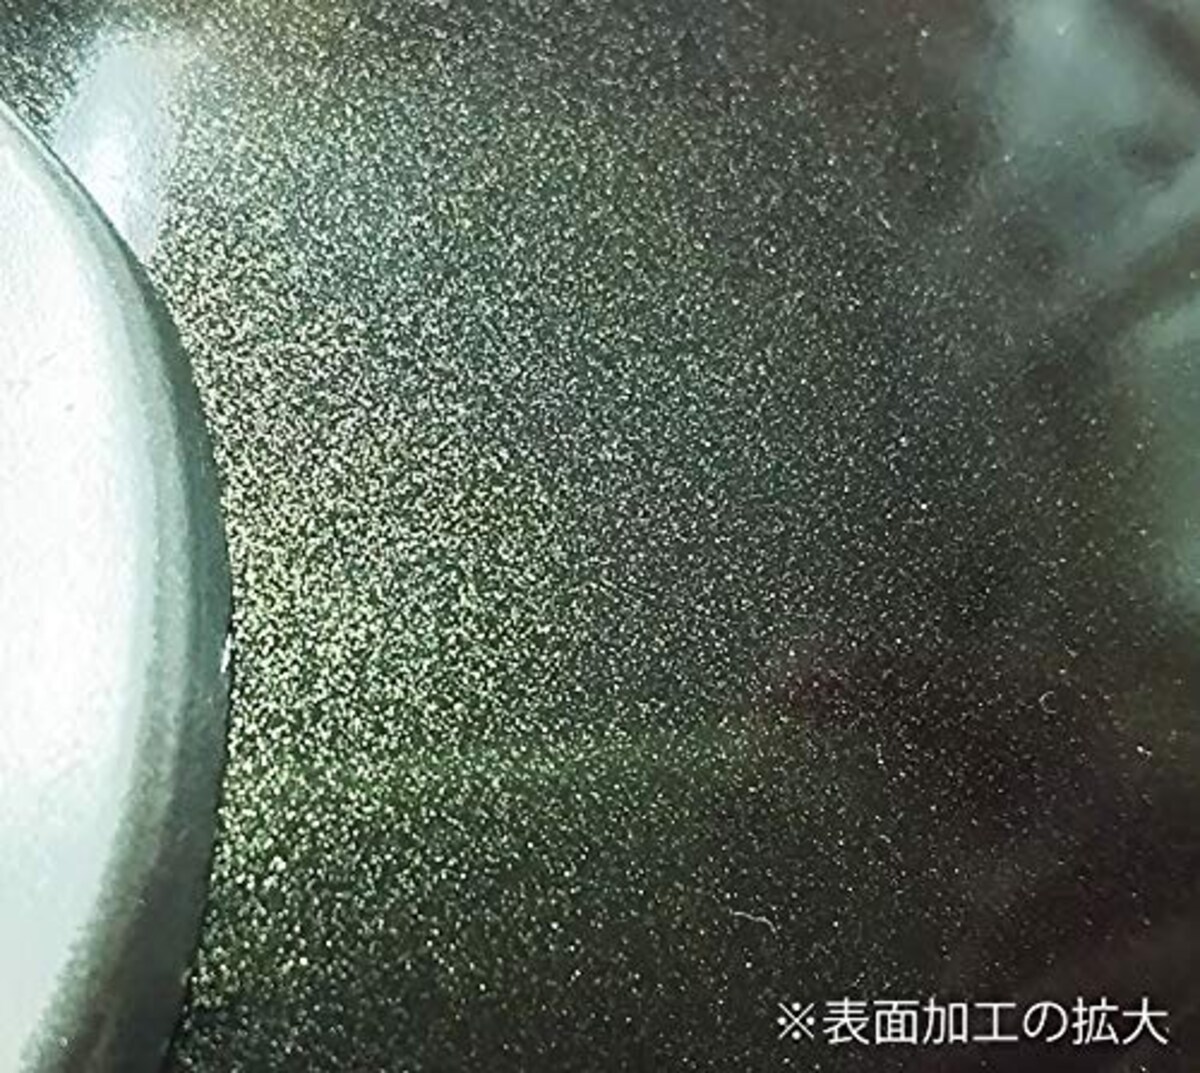  ベストコ フライパン ダークグリーン 20cm テフロン セレクト オッティモ ガス火用 ND-691画像2 